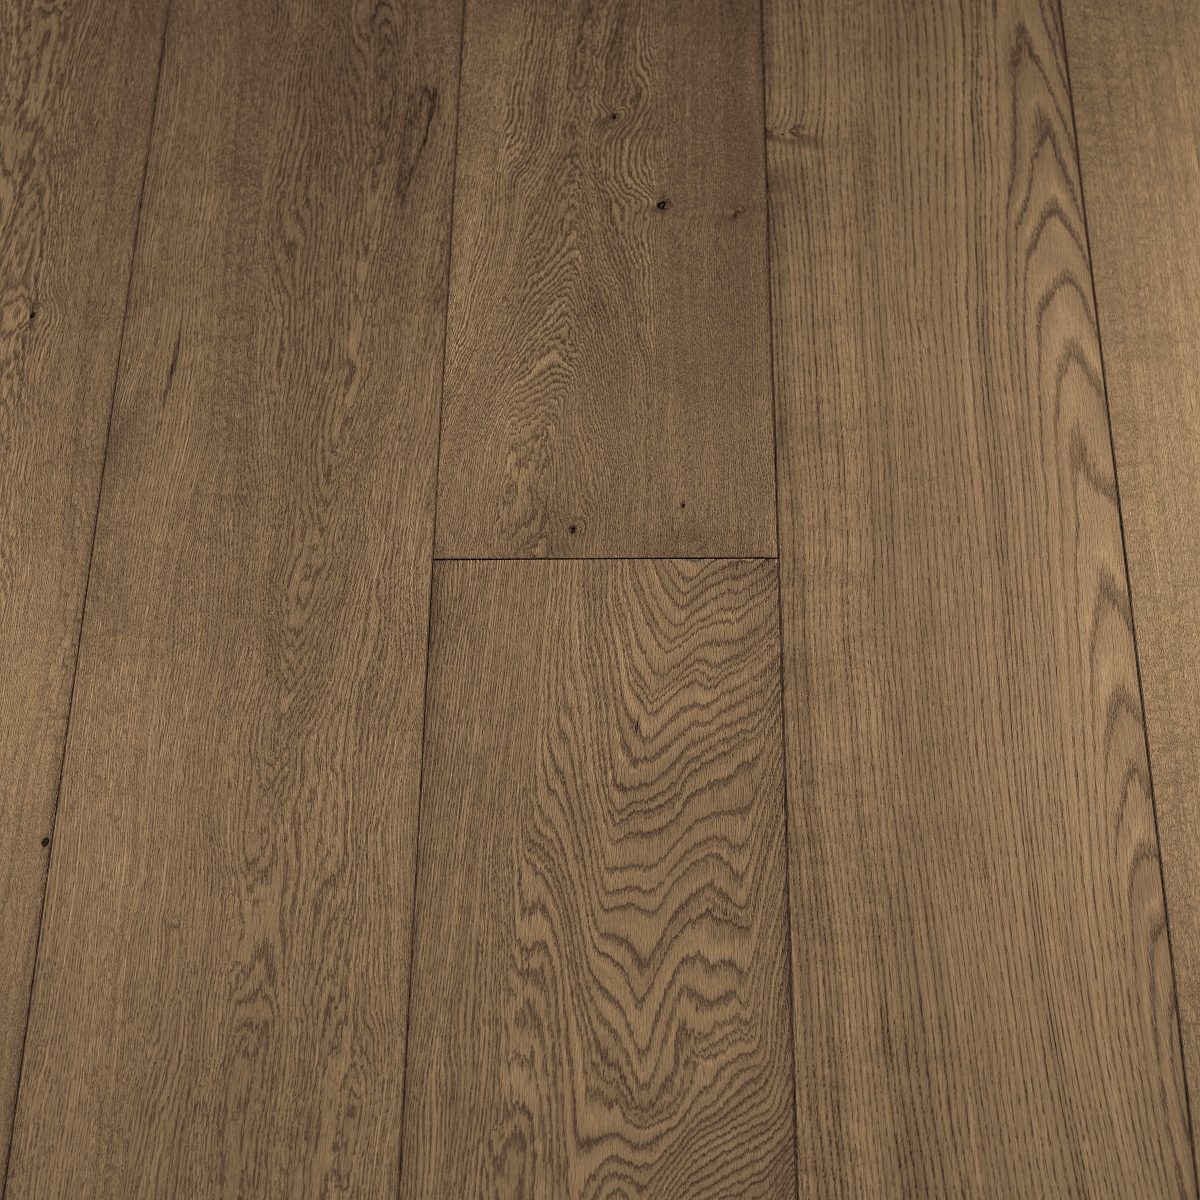 Mocha 190mm x 18mm x 1900mm Bespoke Wood Flooring